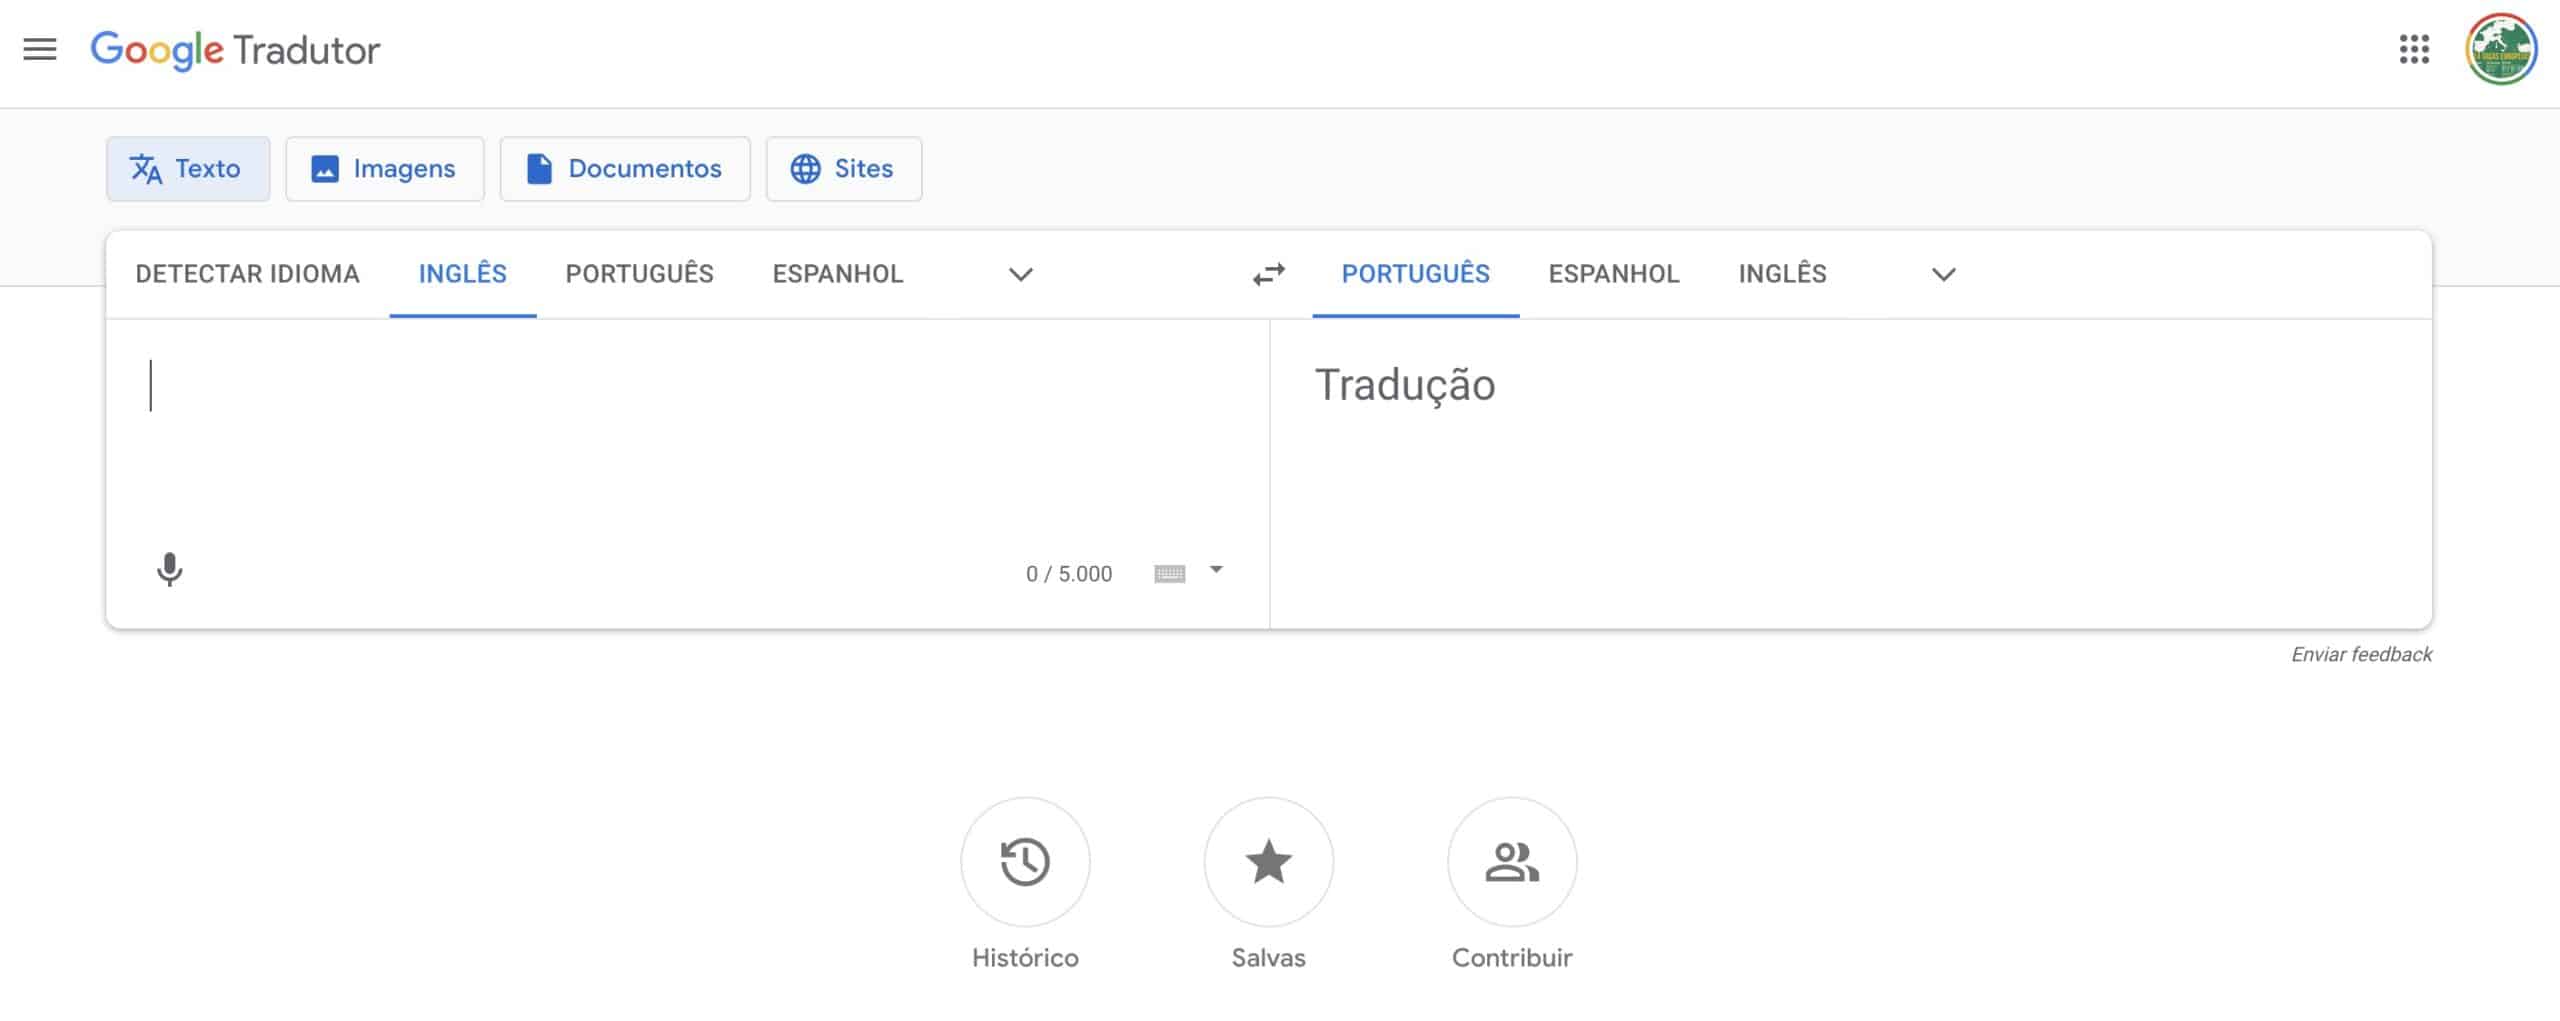 Google Tradutor: Como traduzir textos em fotos